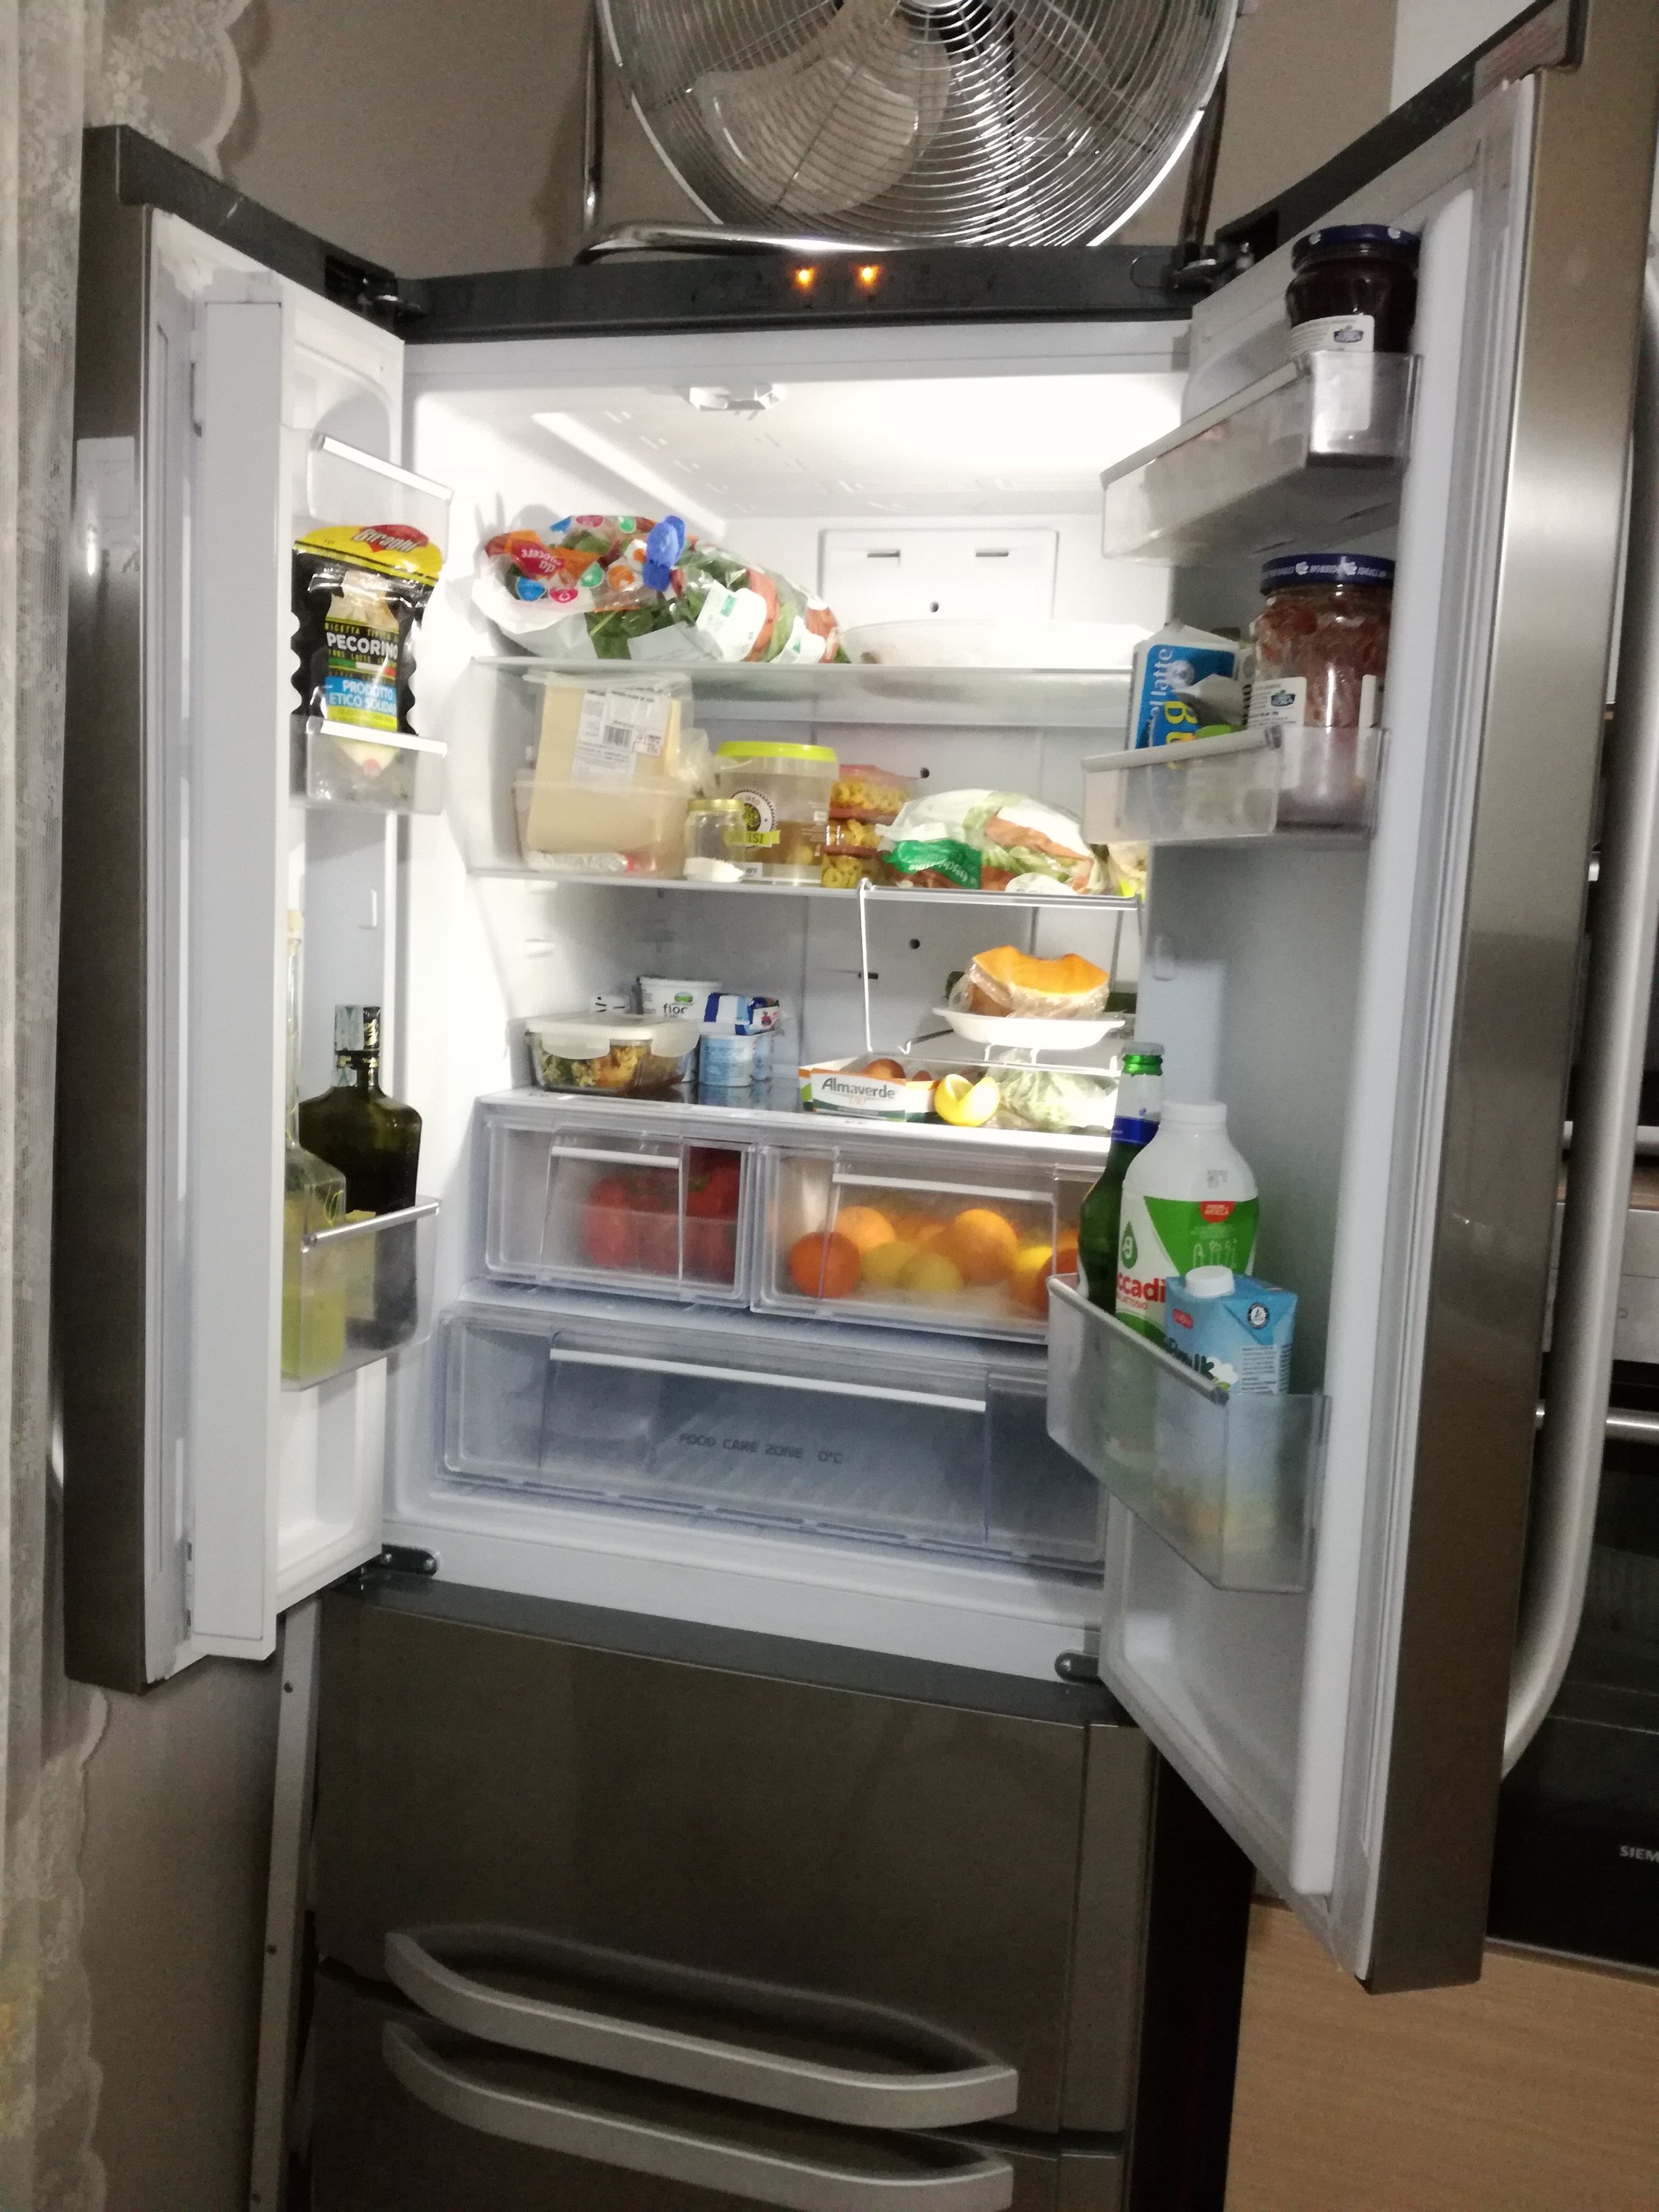 Cosa significa la zona 0 gradi in un frigorifero?